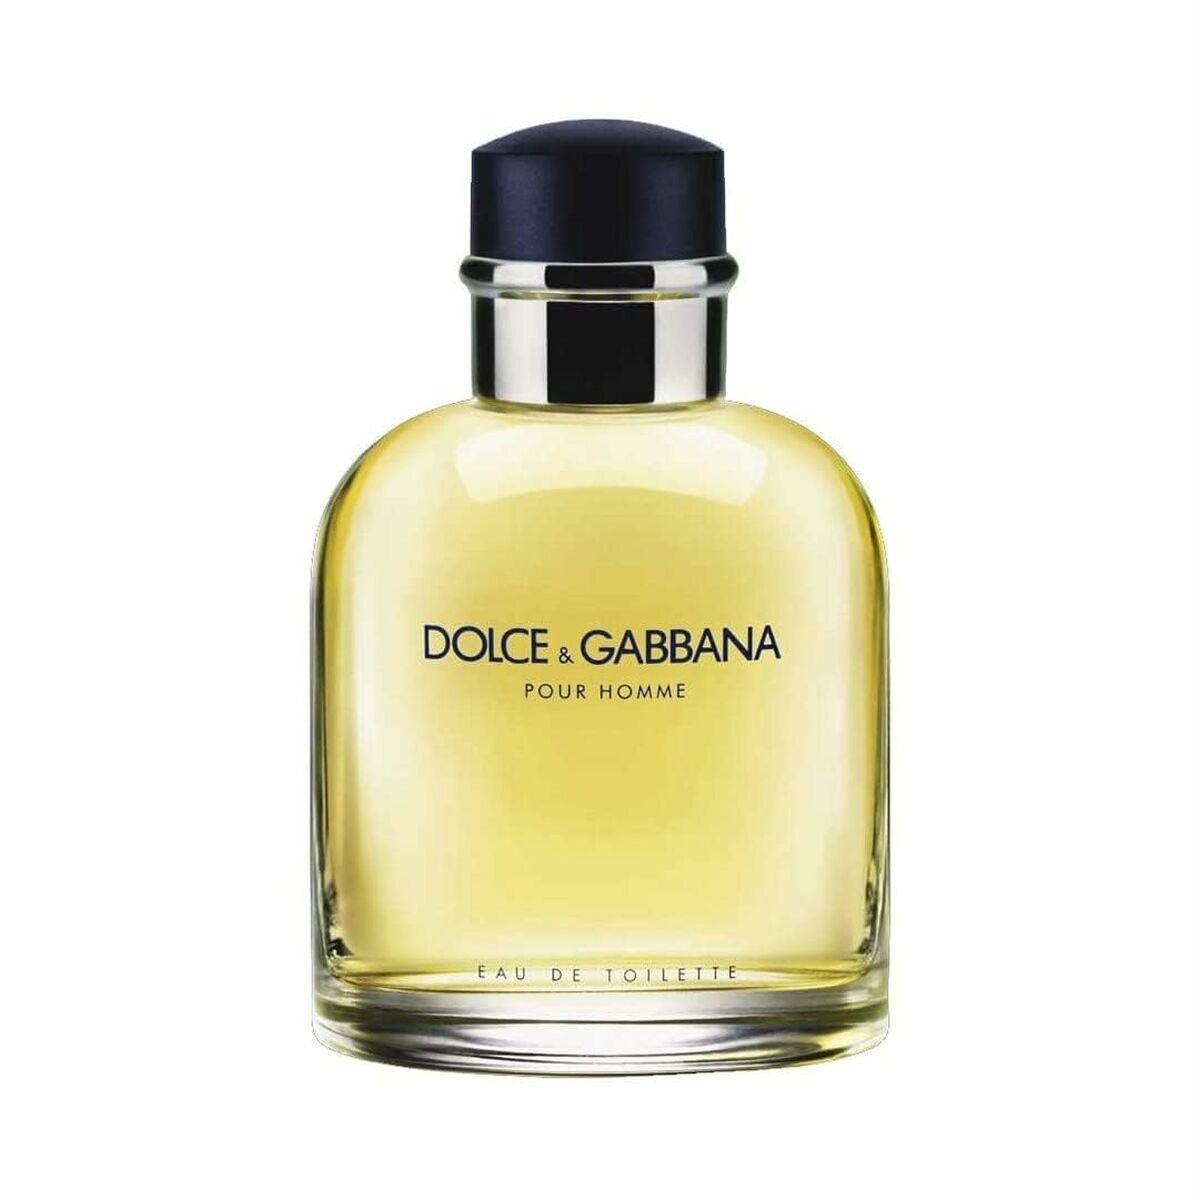 Dolce & Gabbana Pour Homme Eau de Toilette 200 ml